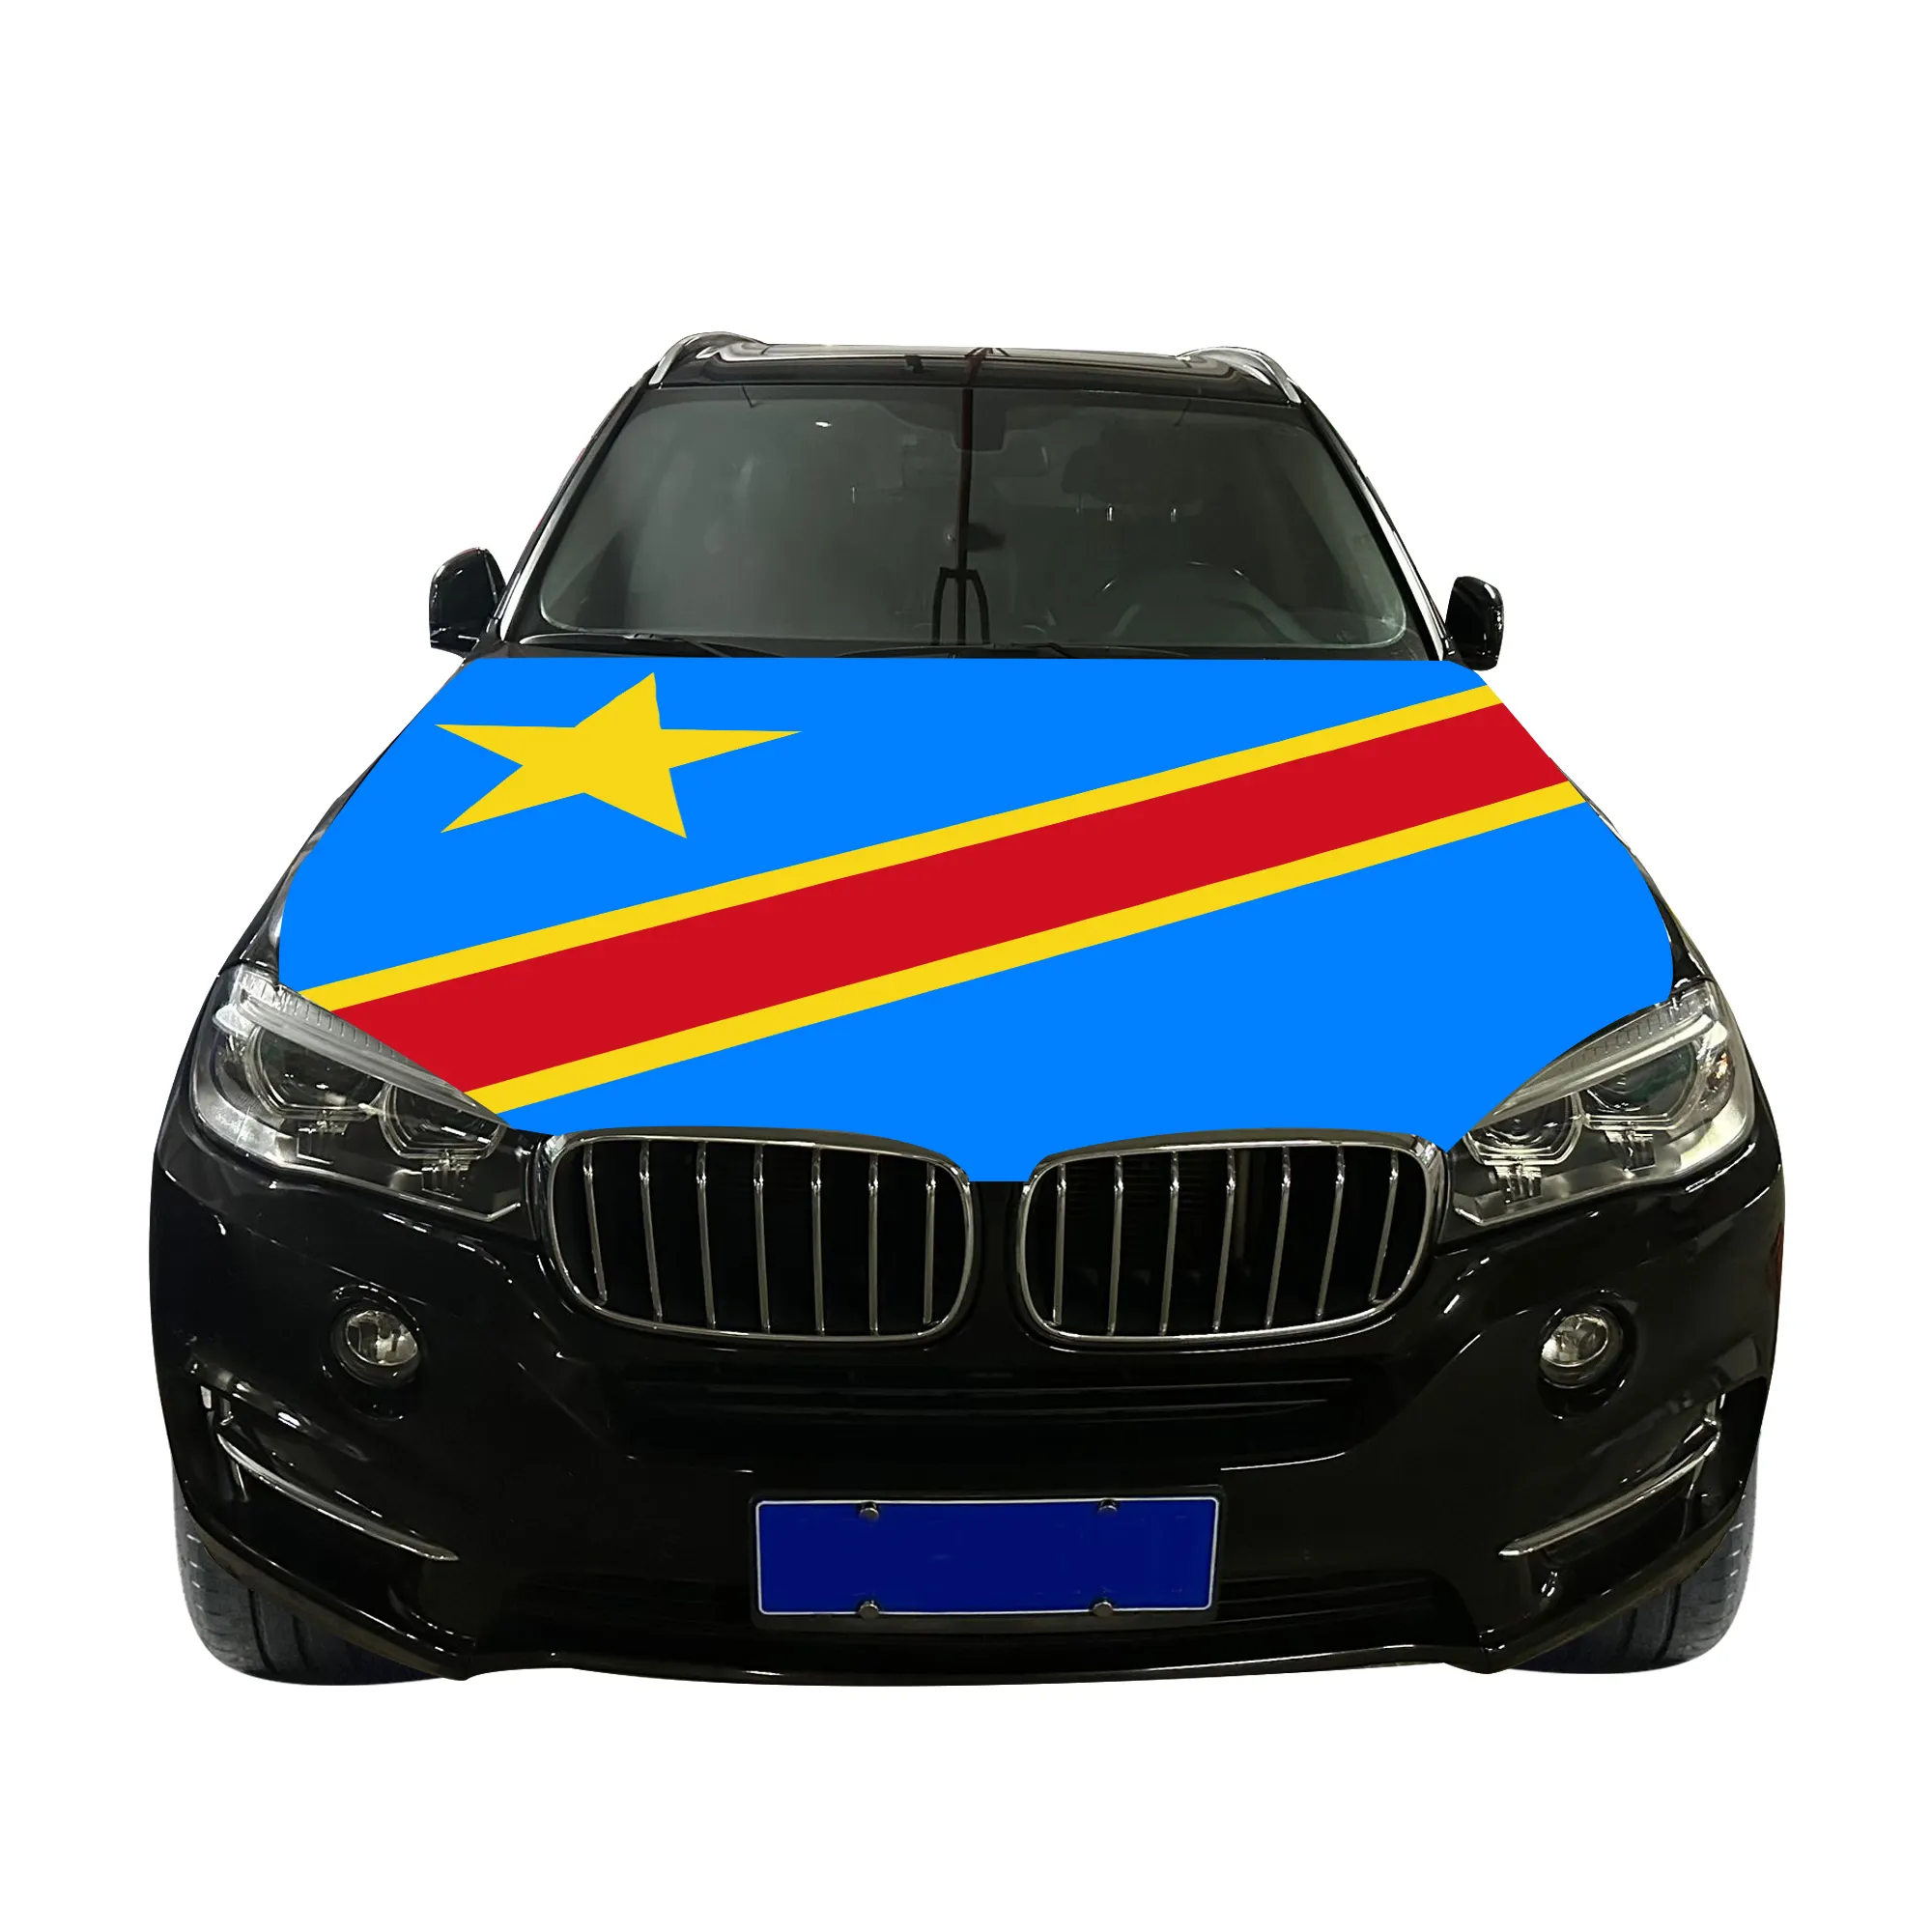 غطاء محرك السيارة من البوليستر المحاك عالي الجودة من جمهورية الكونغو الديمقراطية غطاء رأس السيارة على شكل علم البلدان العلامة التجارية